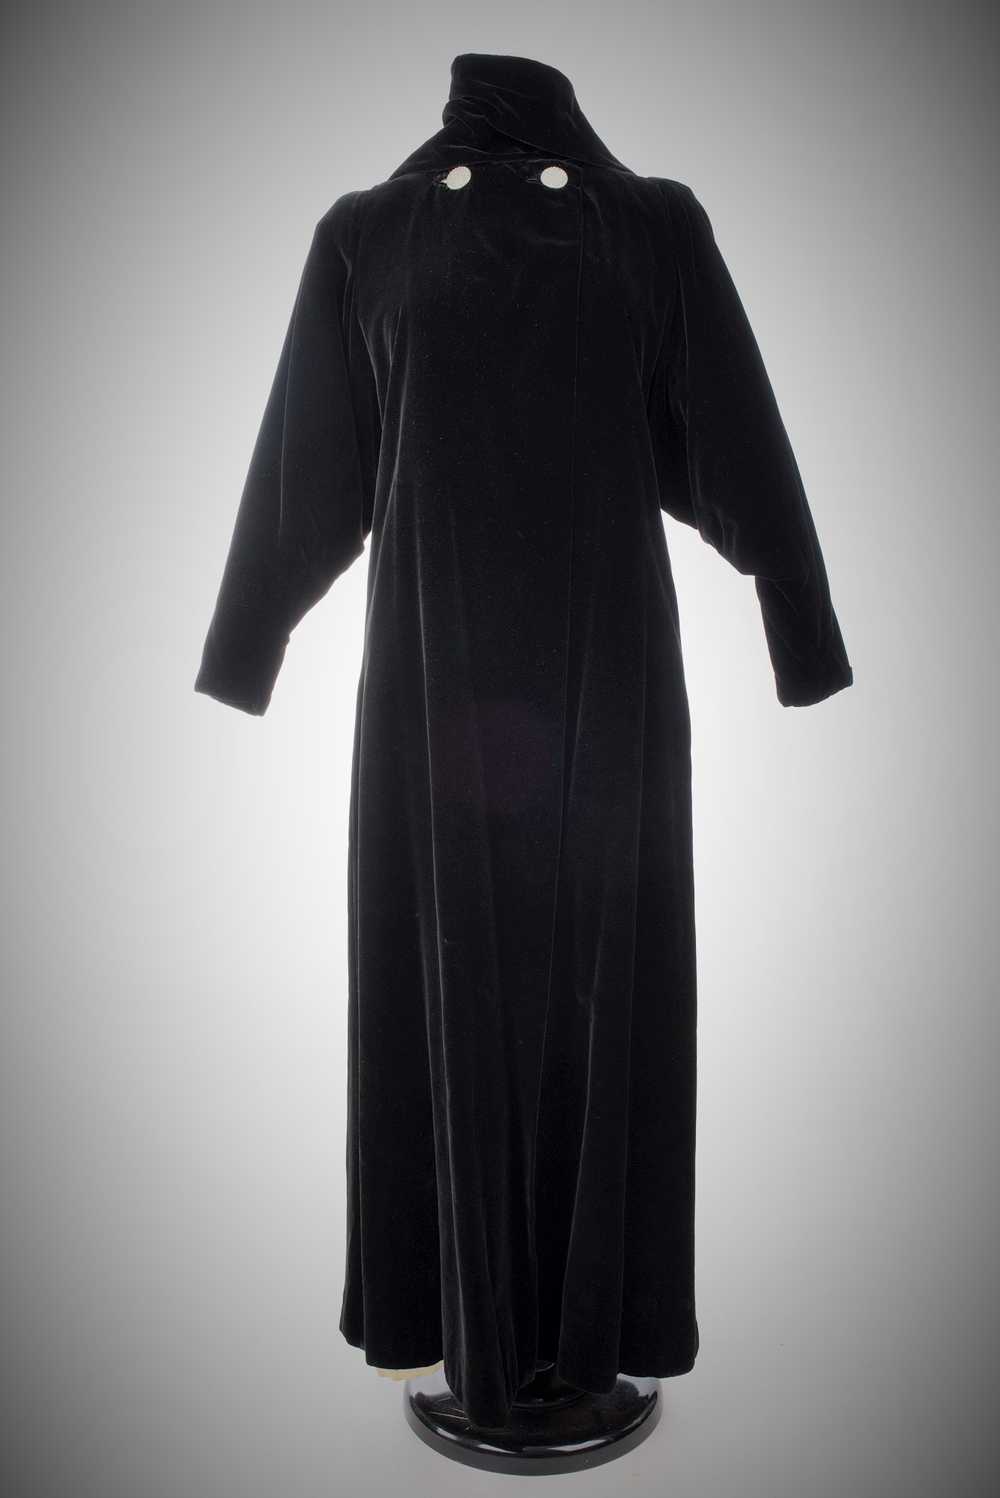 Velvet Evening Coat by Lucien Lelong Circa 1937 - image 1